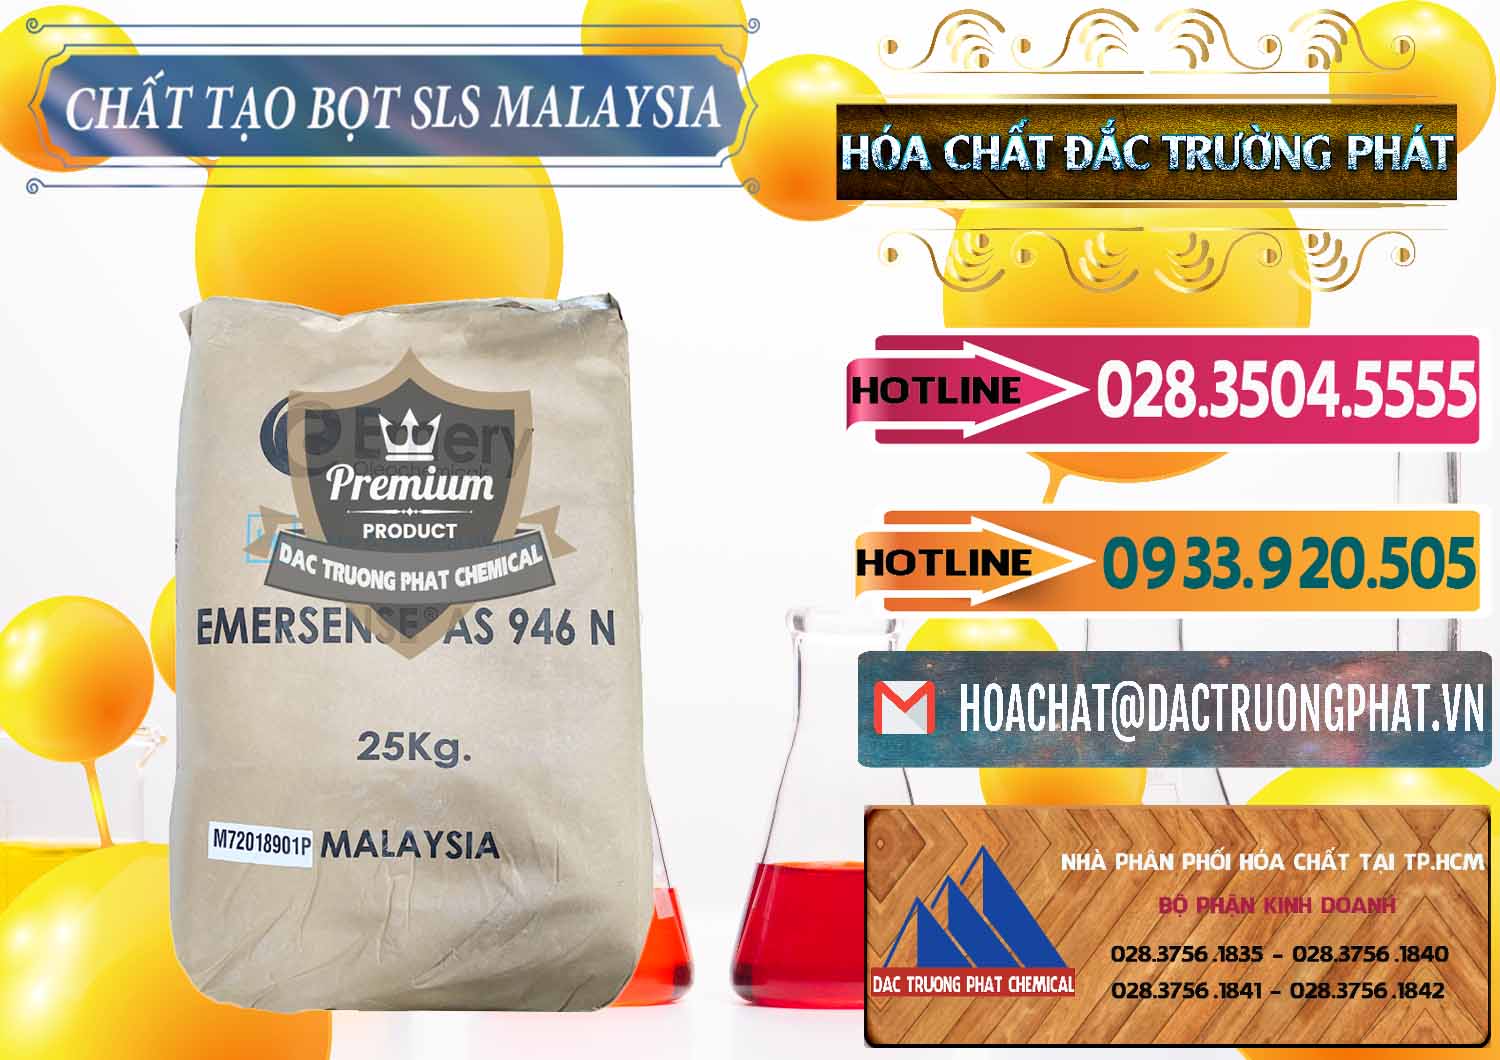 Nhà cung cấp & bán Chất Tạo Bọt SLS Emery - Emersense AS 946N Mã Lai Malaysia - 0423 - Đơn vị chuyên phân phối _ nhập khẩu hóa chất tại TP.HCM - dactruongphat.vn